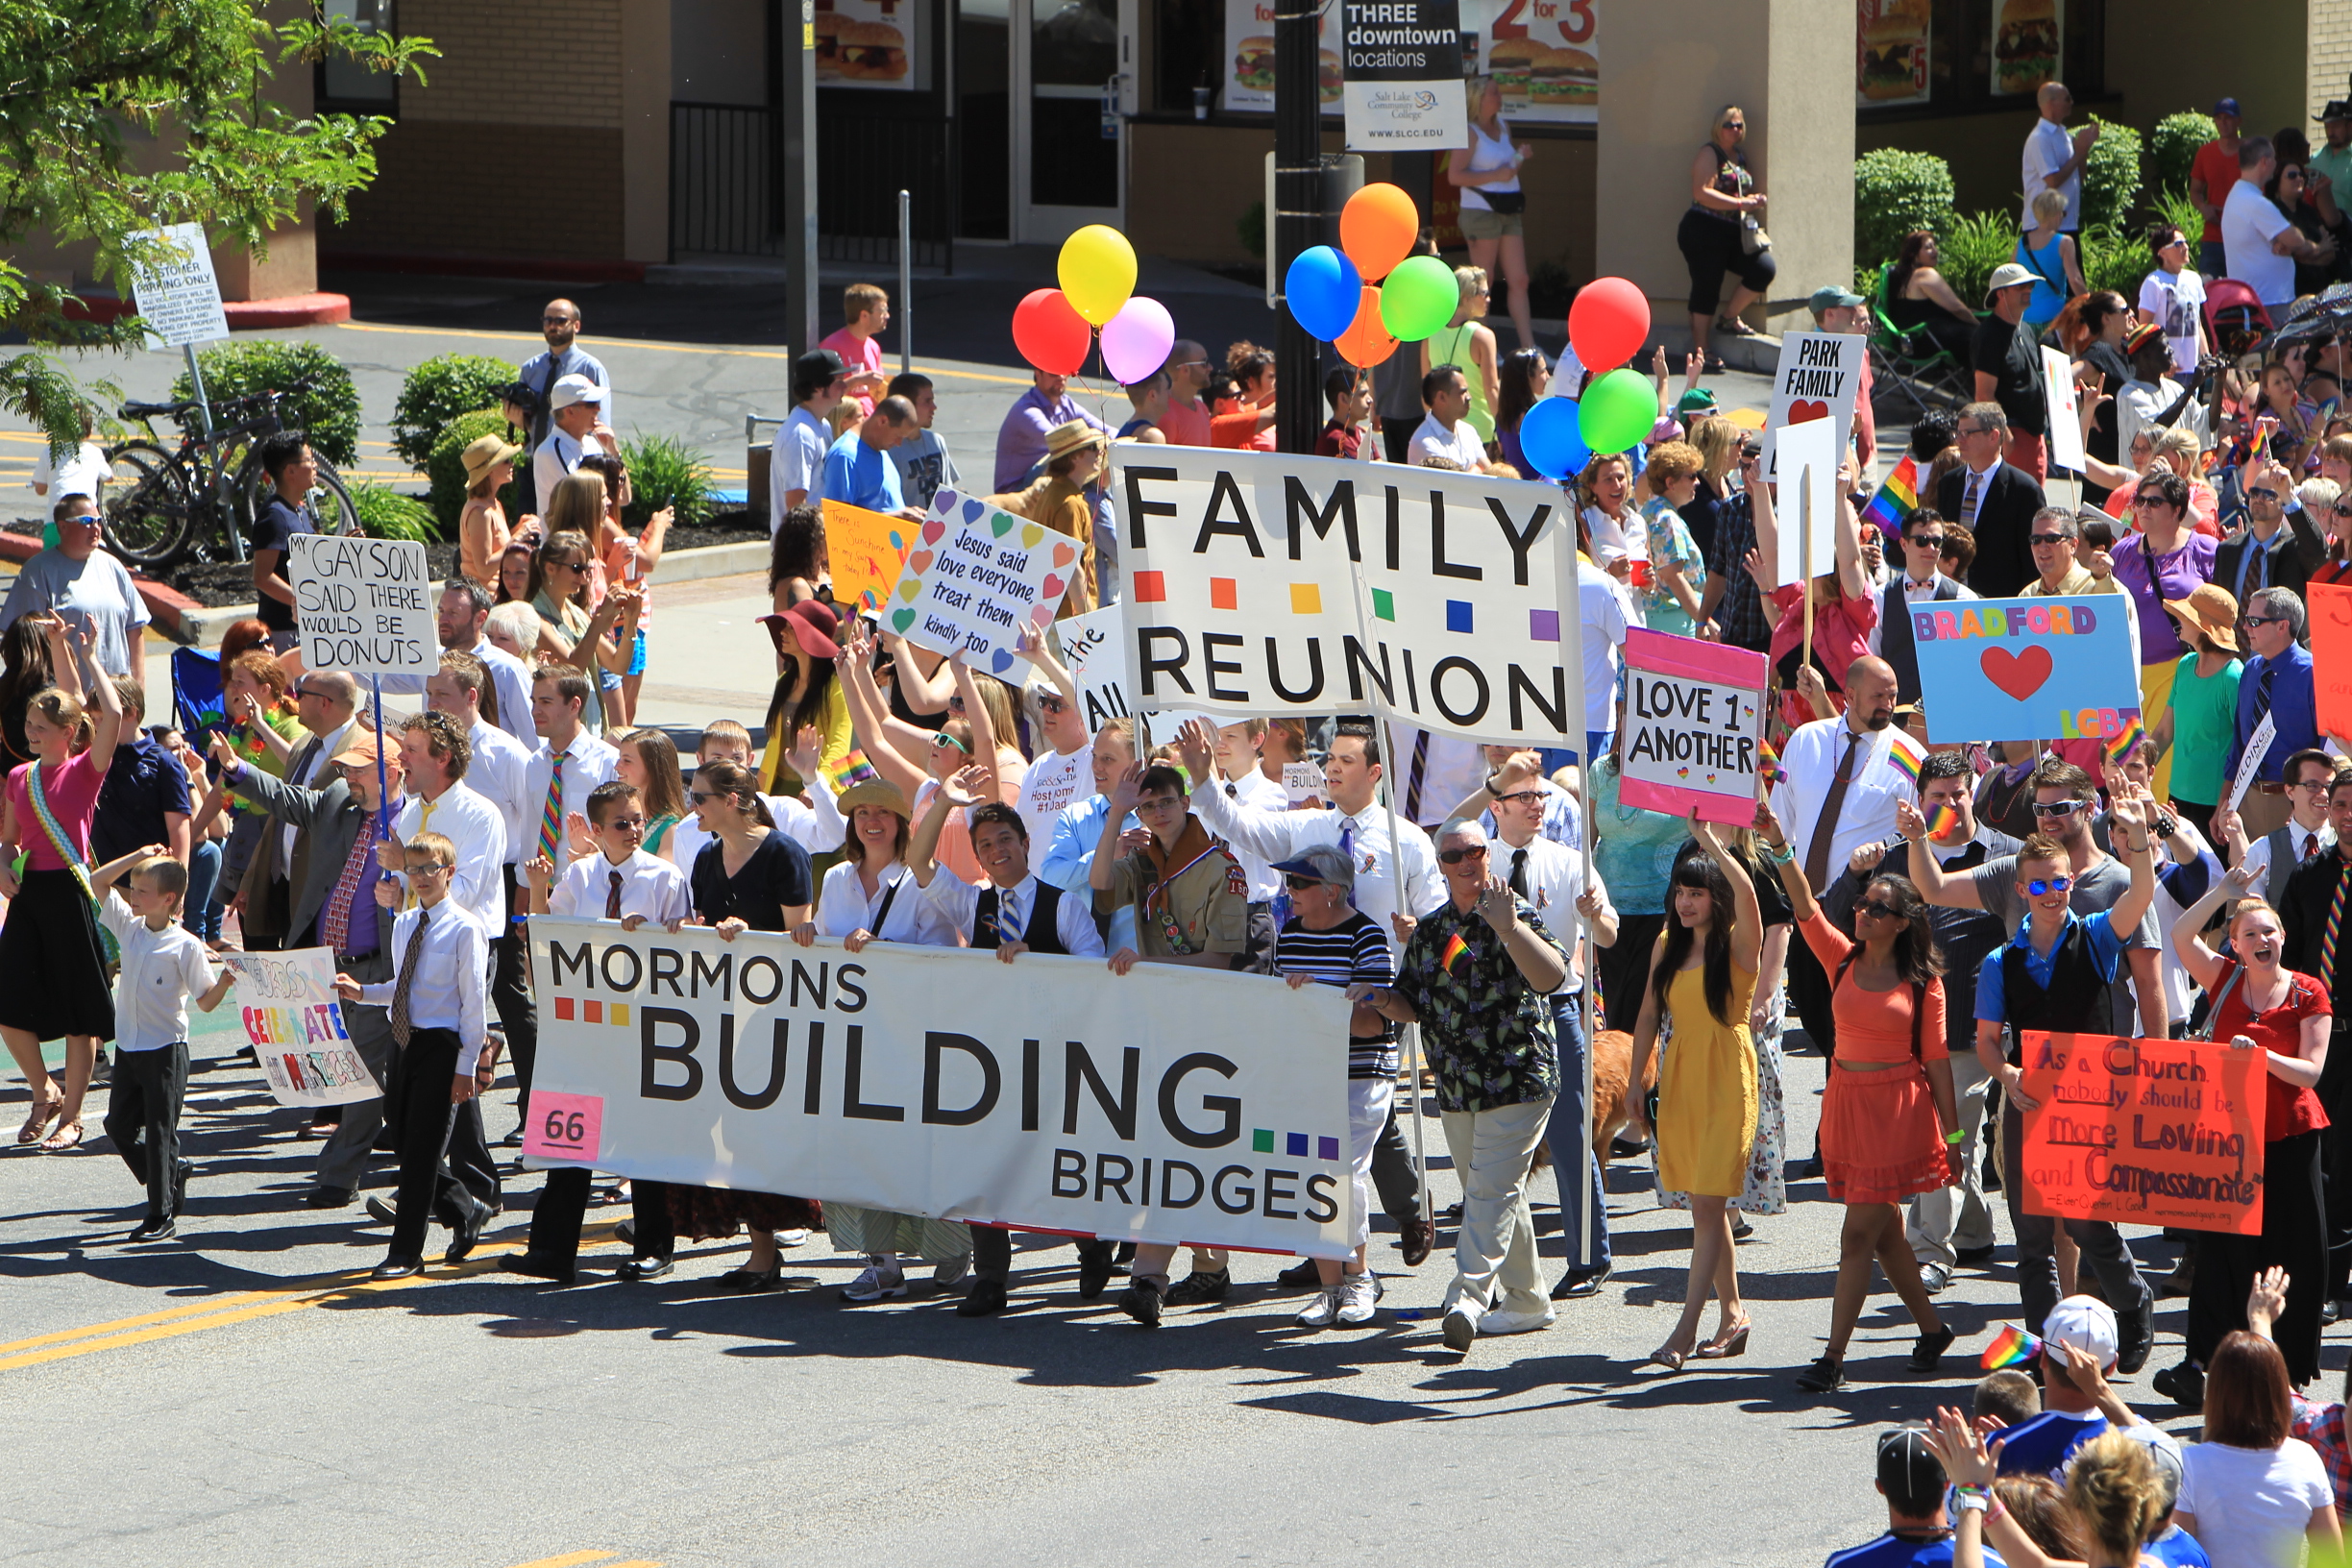 Mormons Building Bridges at Pride Festival